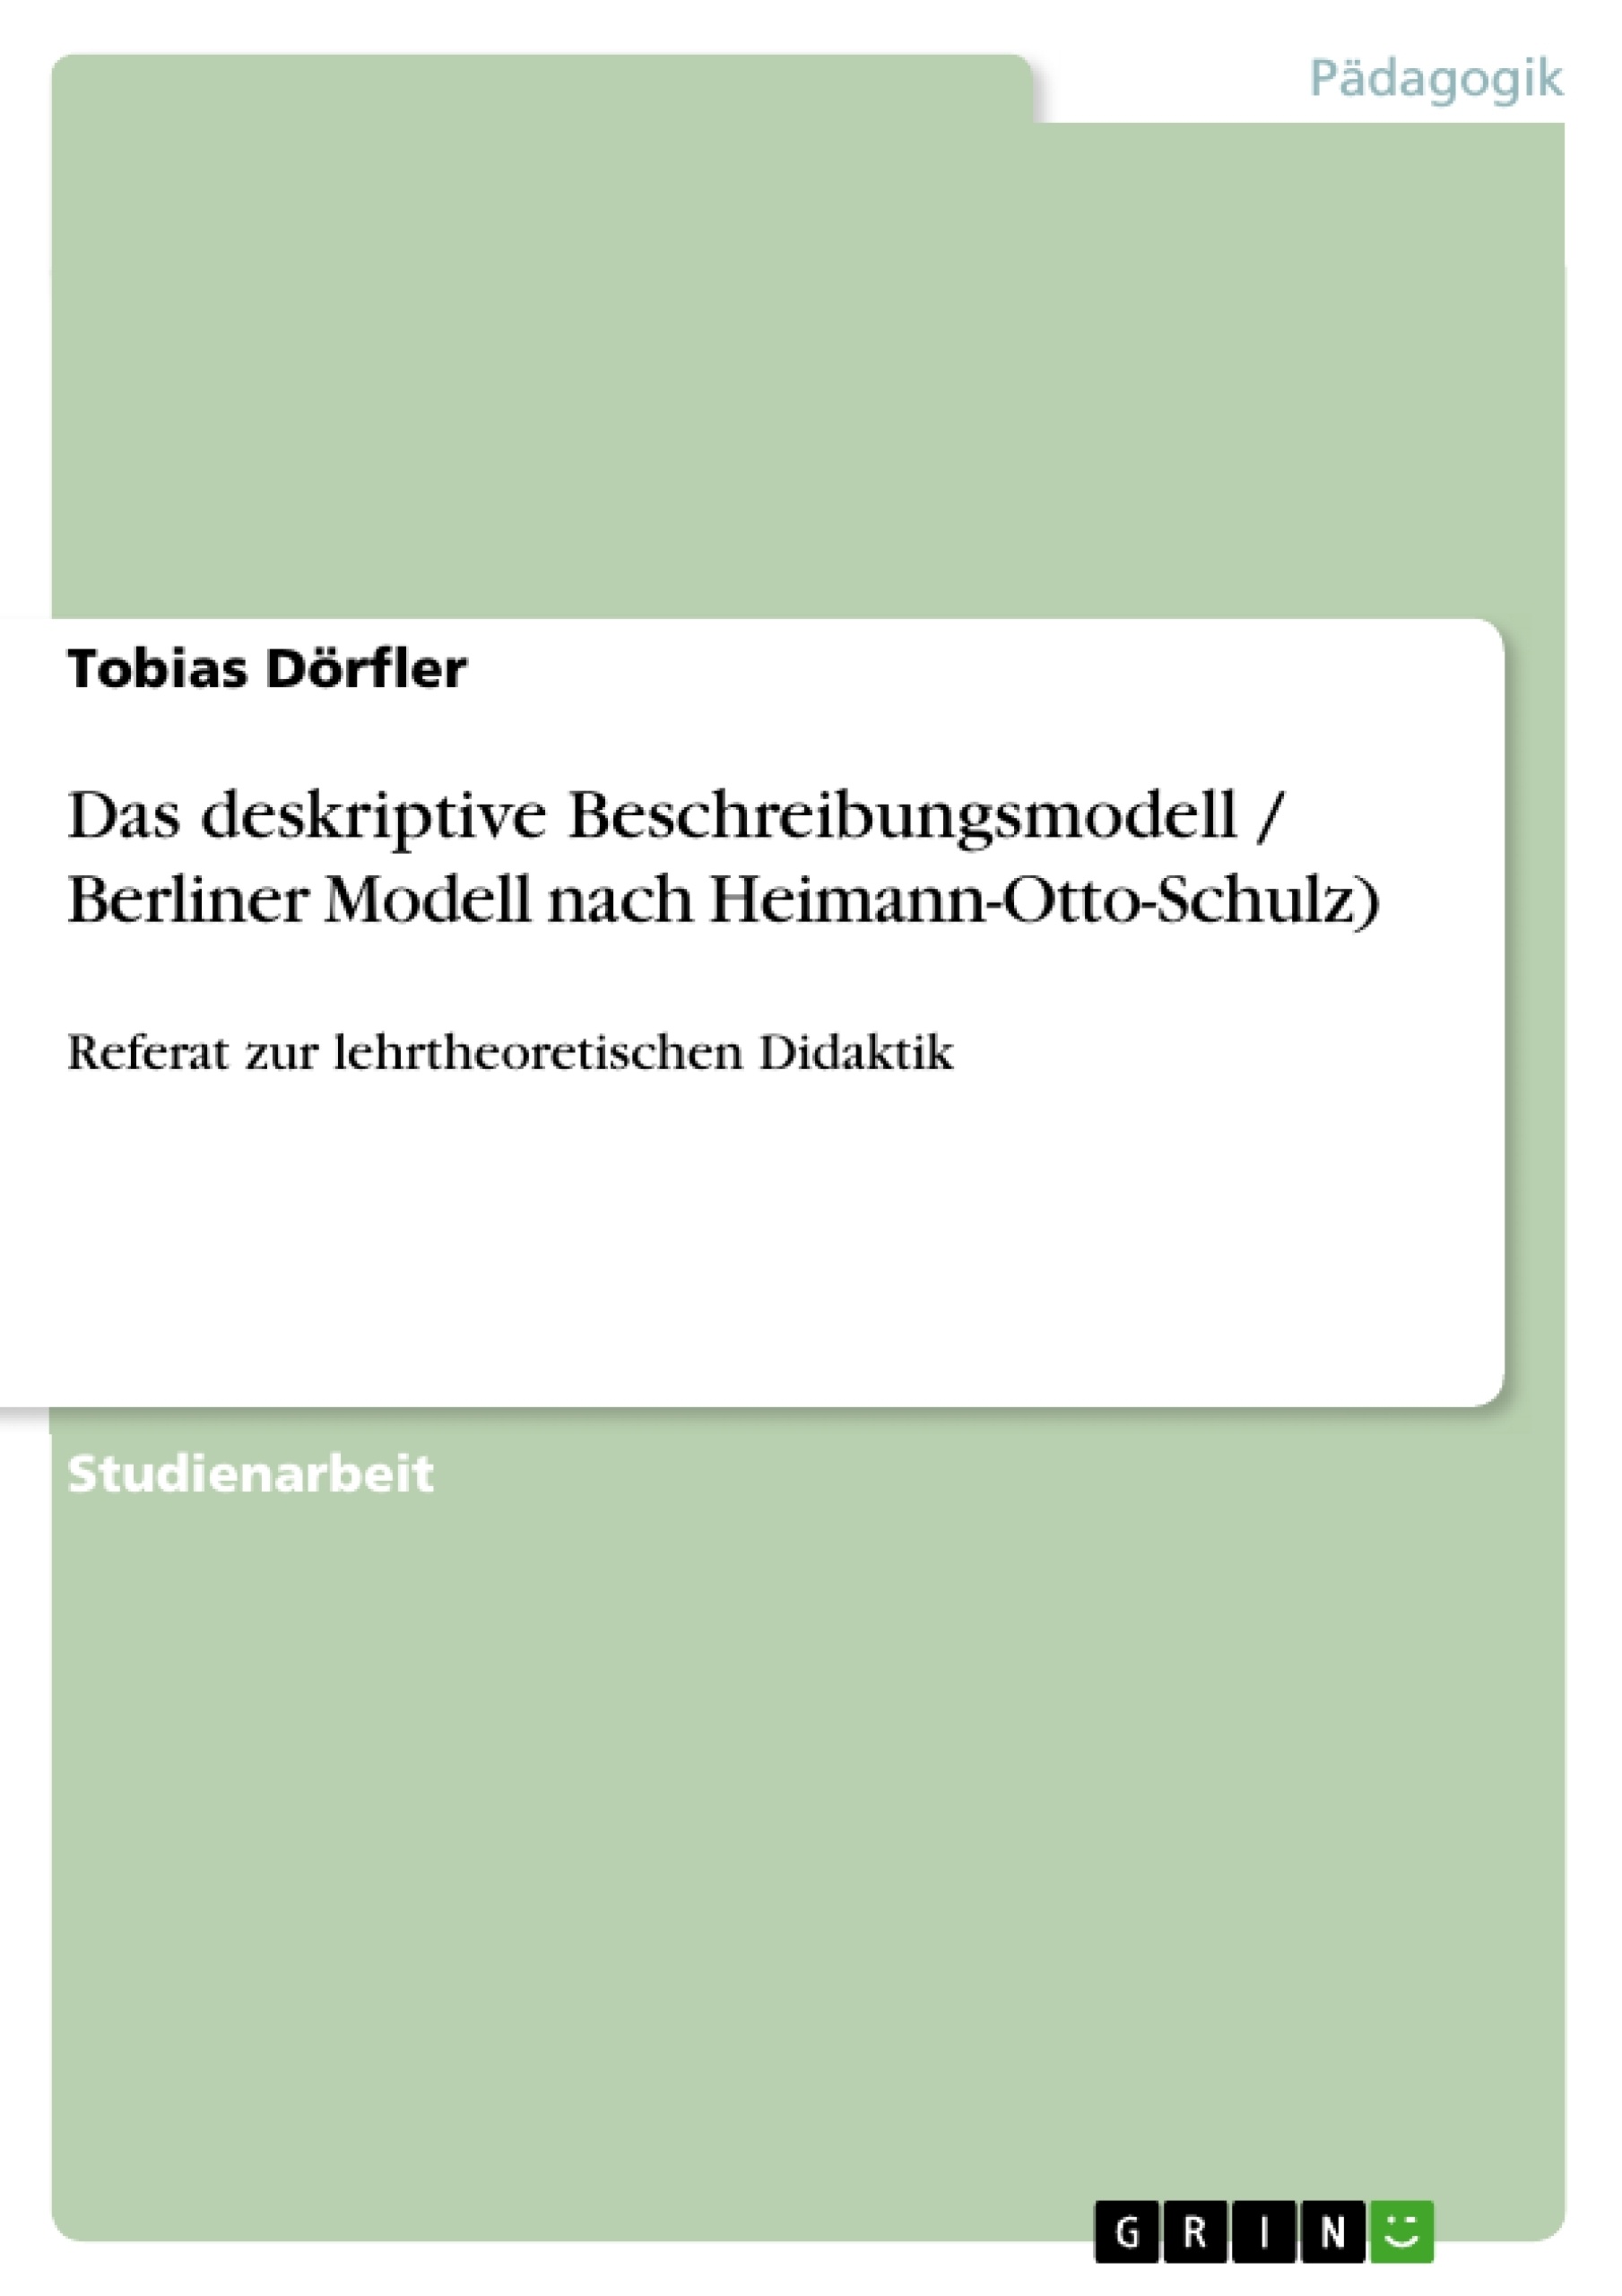 Titre: Das deskriptive Beschreibungsmodell / Berliner Modell nach Heimann-Otto-Schulz)